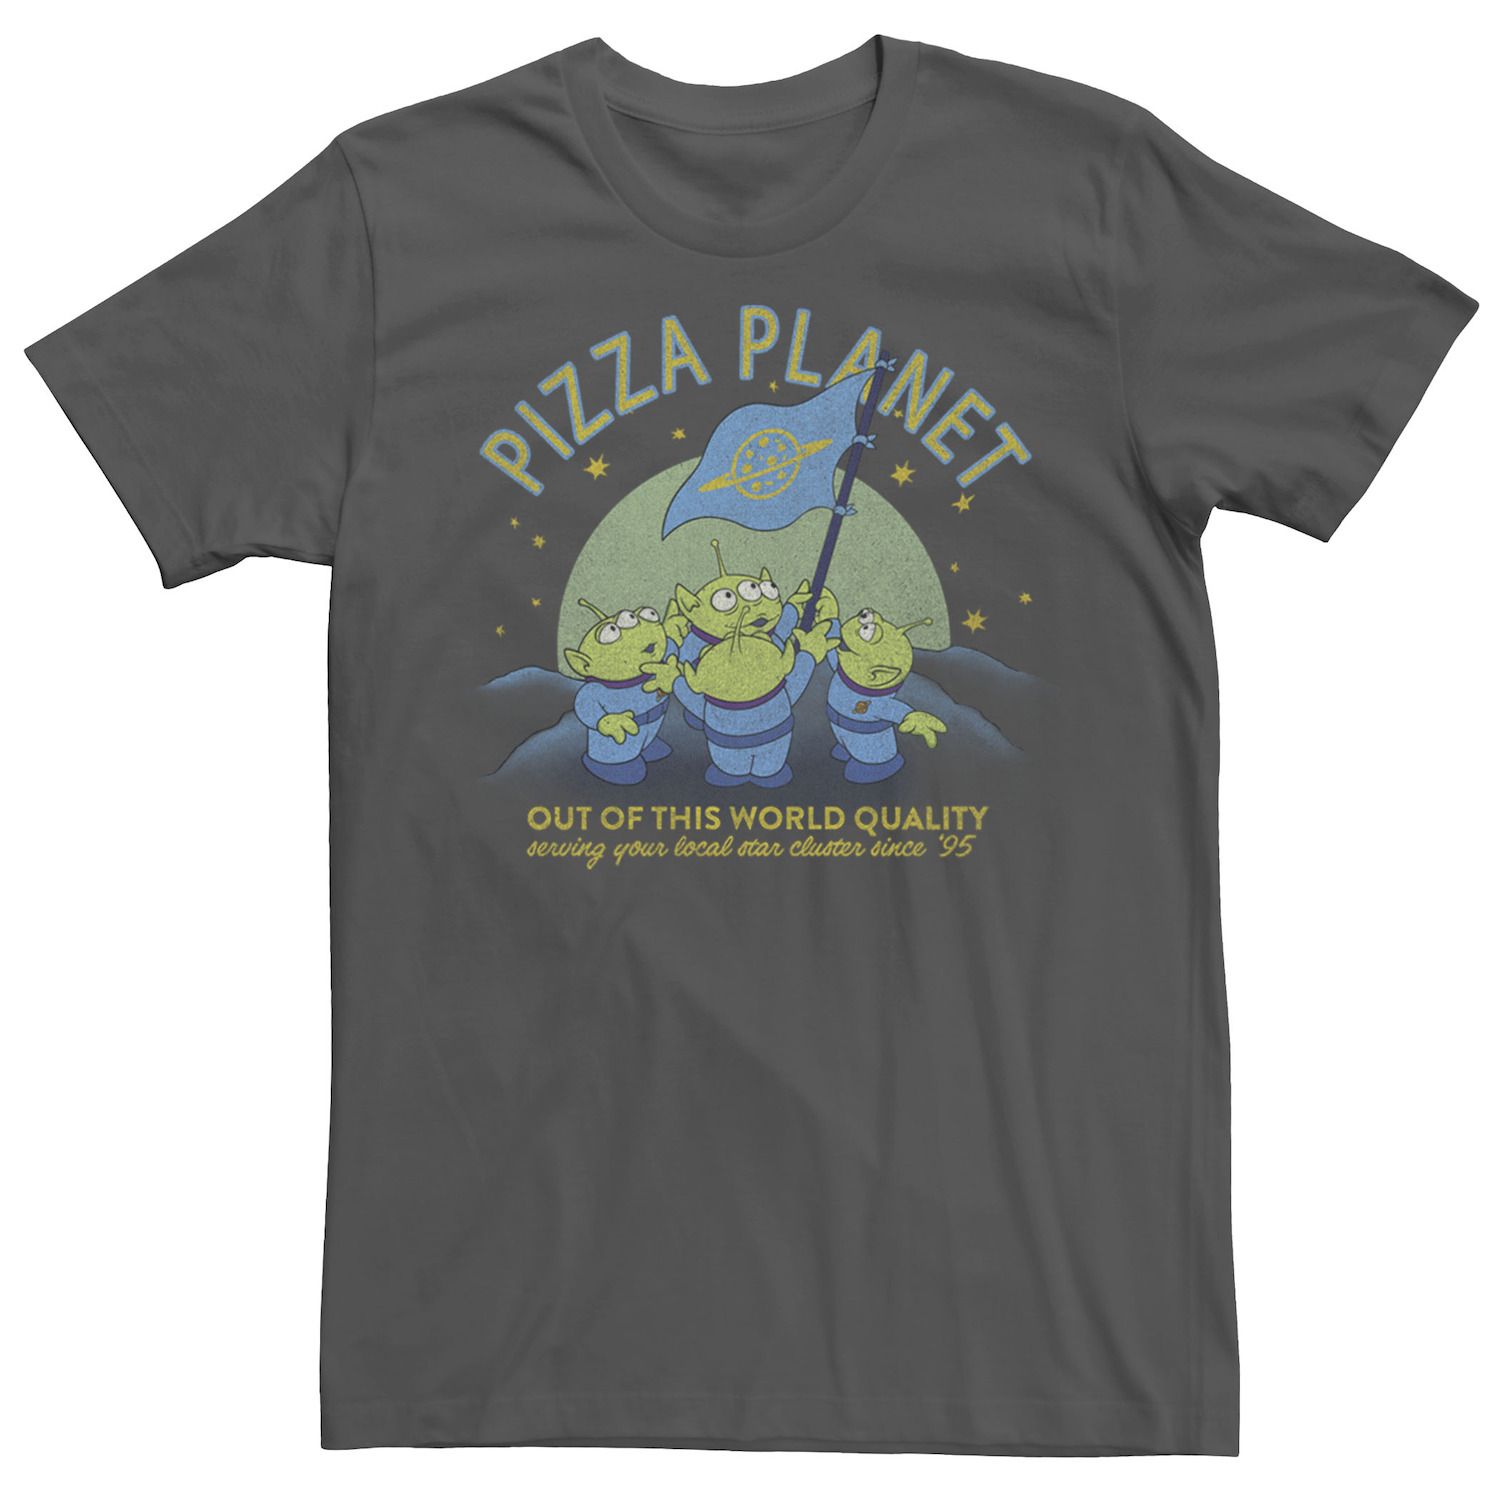 Мужская футболка с флагом «История игрушек Пицца Планета игрушек» Disney / Pixar